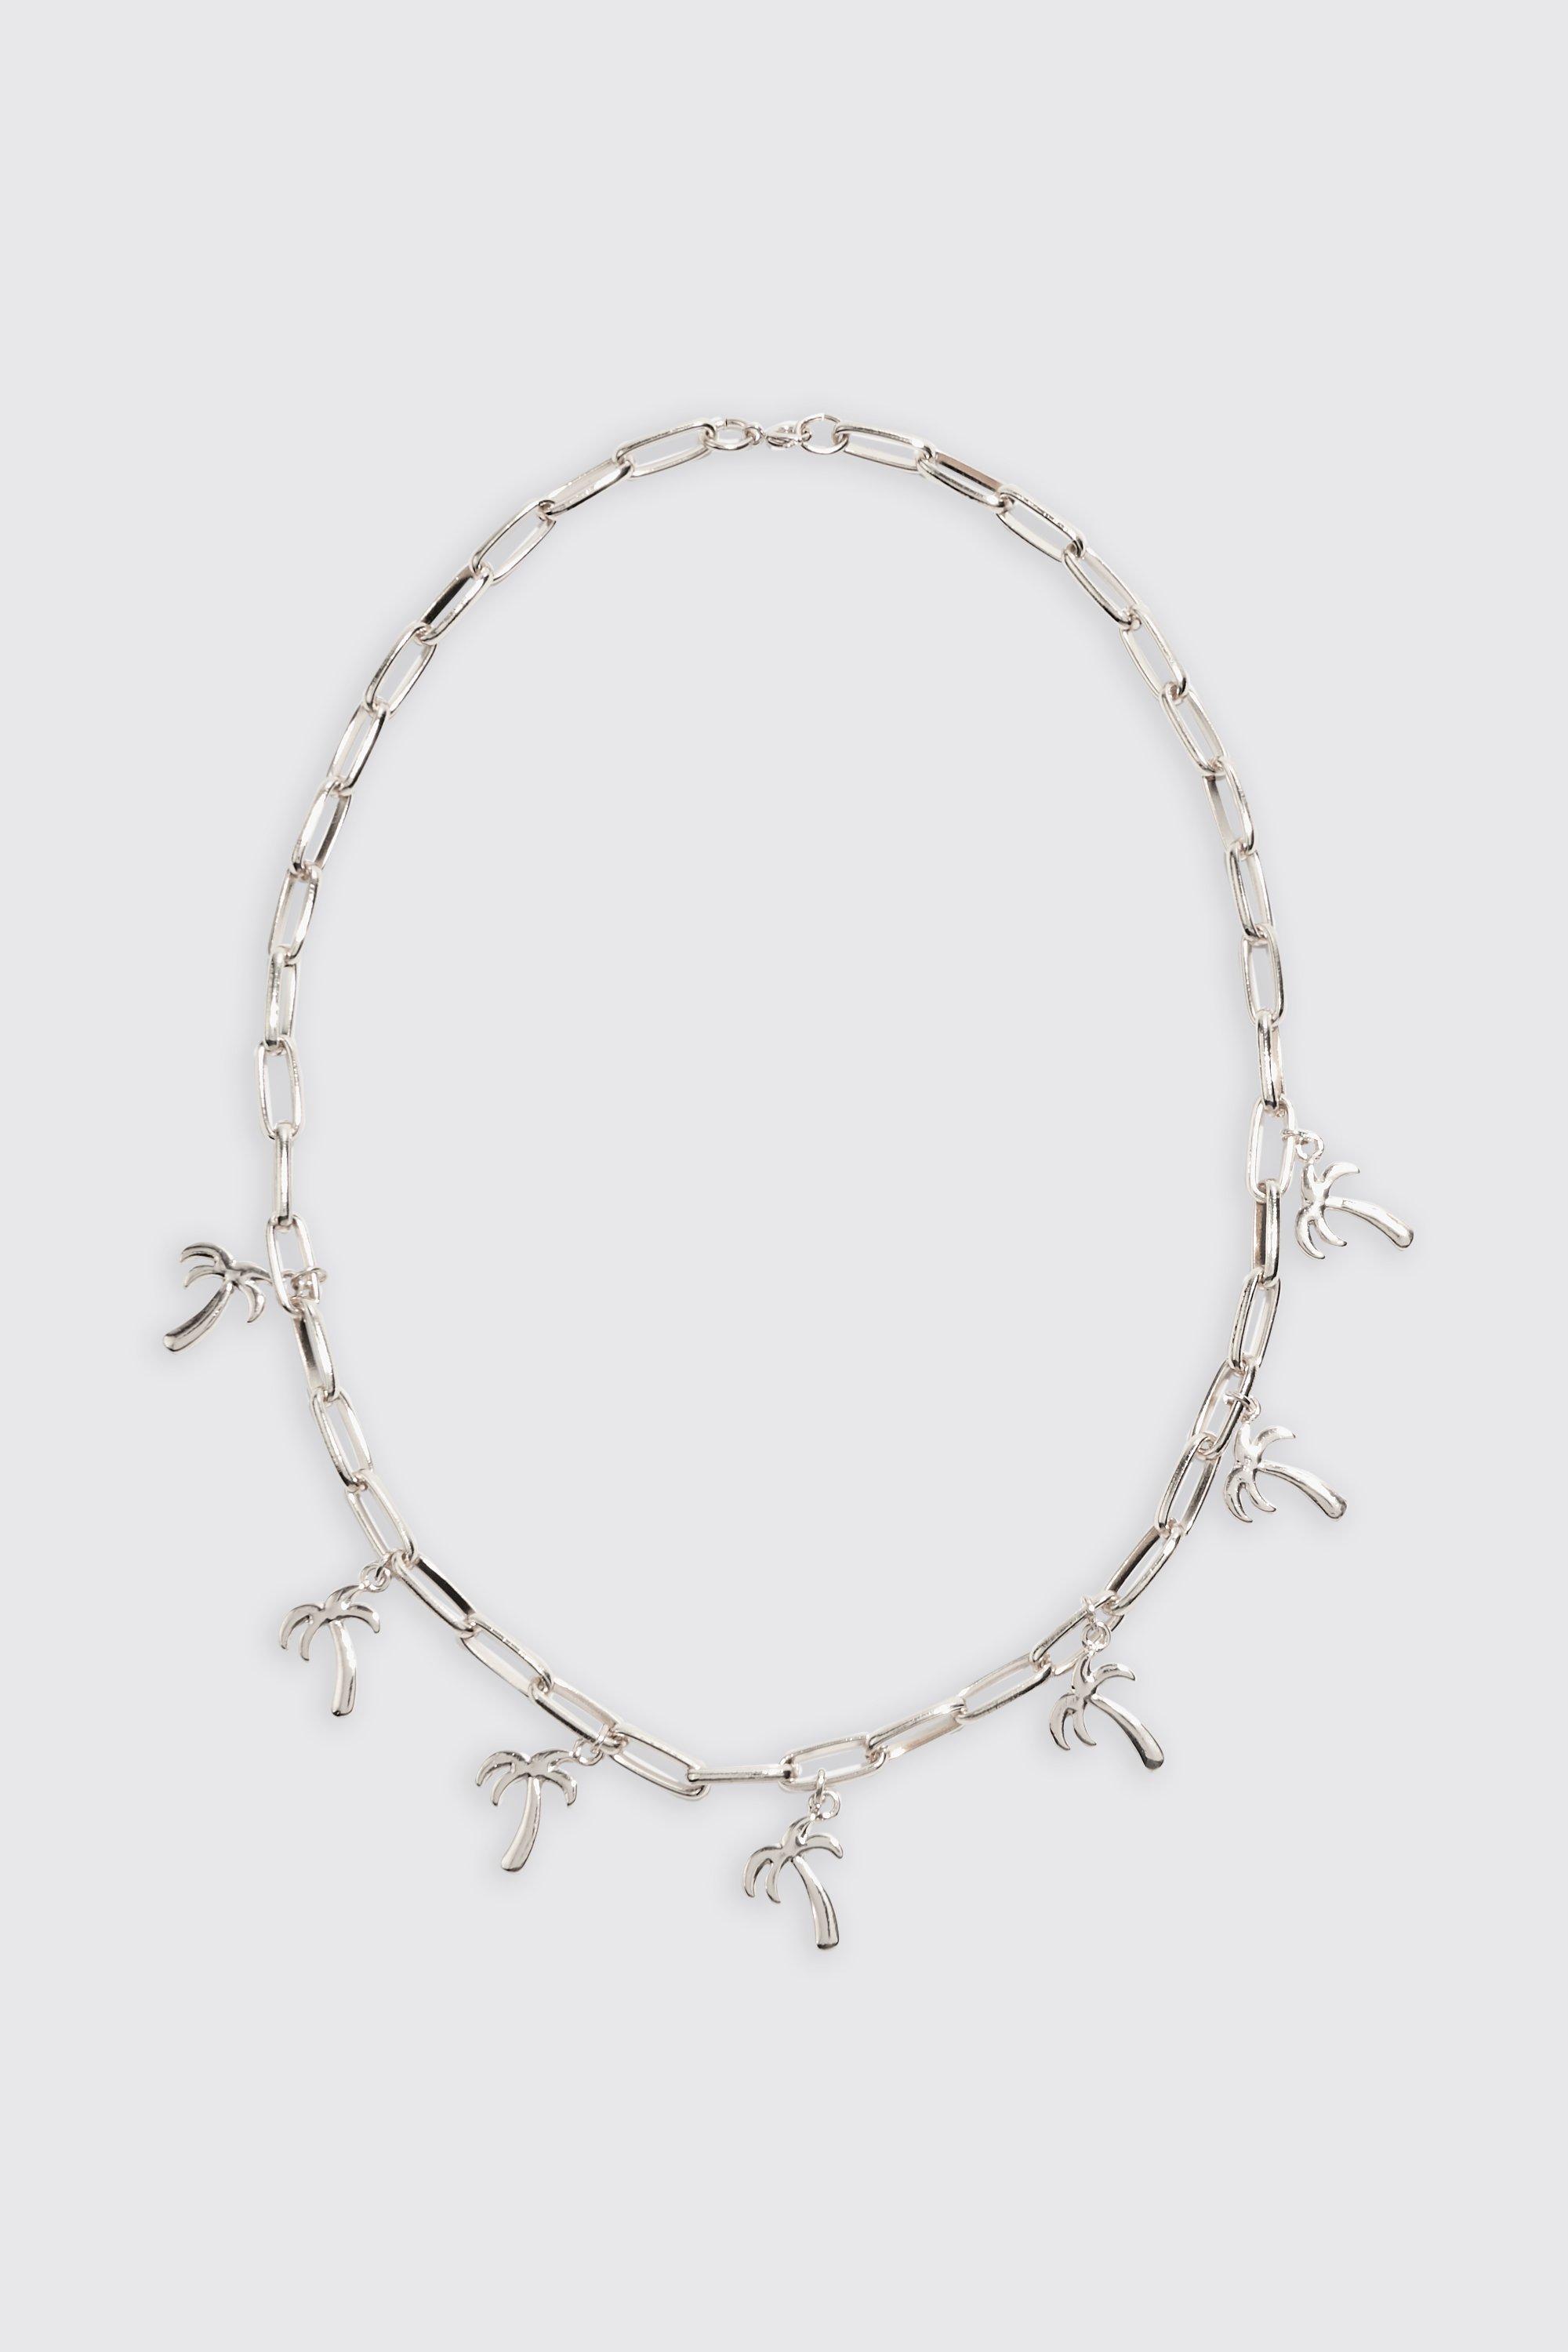 collier à pendentif palmier homme - argent - one size, argent